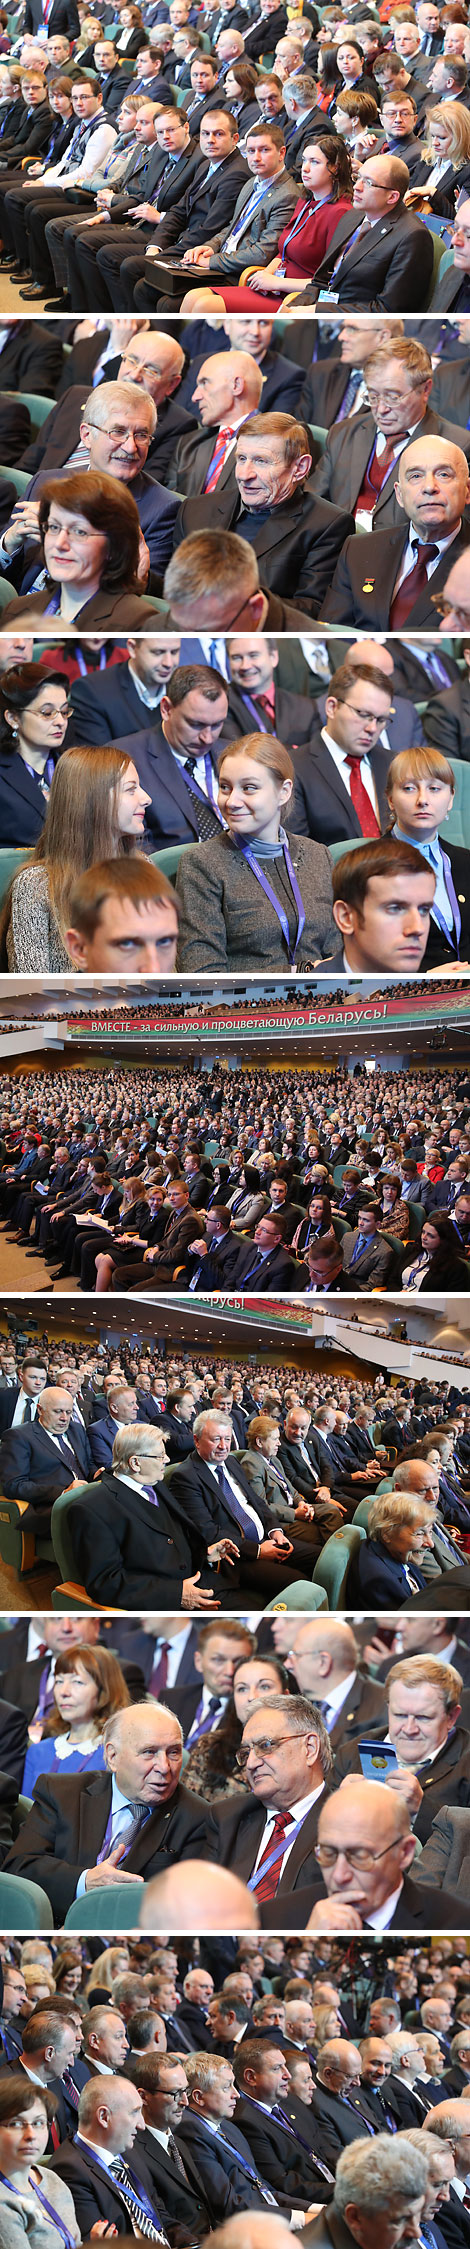 II Съезд учёных Беларуси в Минске